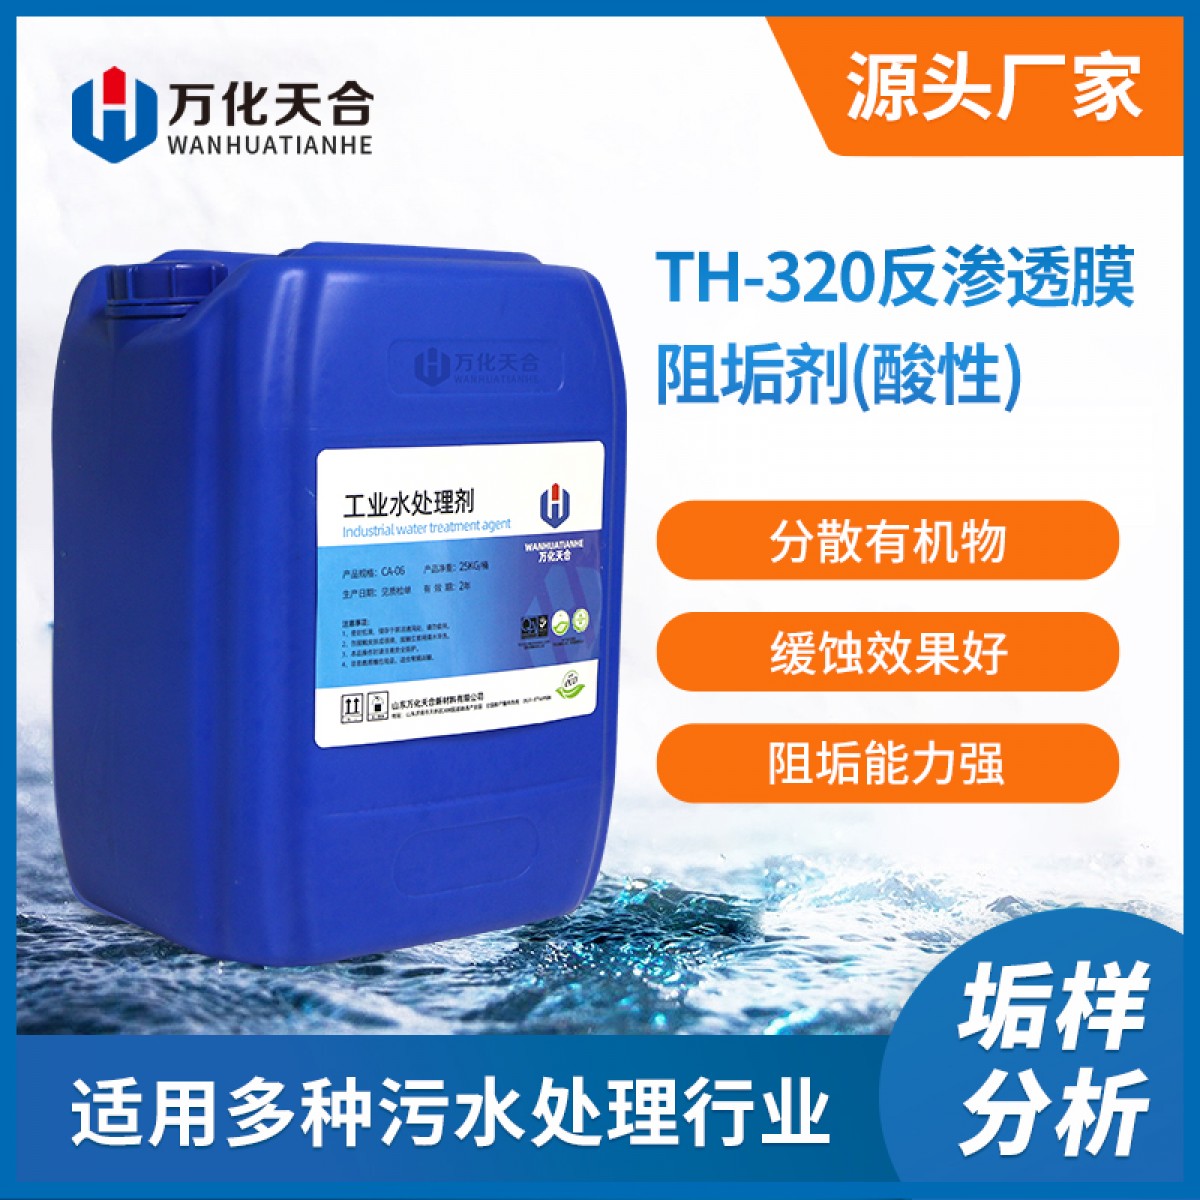 万化易购反渗透膜阻垢剂(酸性)TH-320 RO膜阻垢剂厂家直销纯水阻垢剂